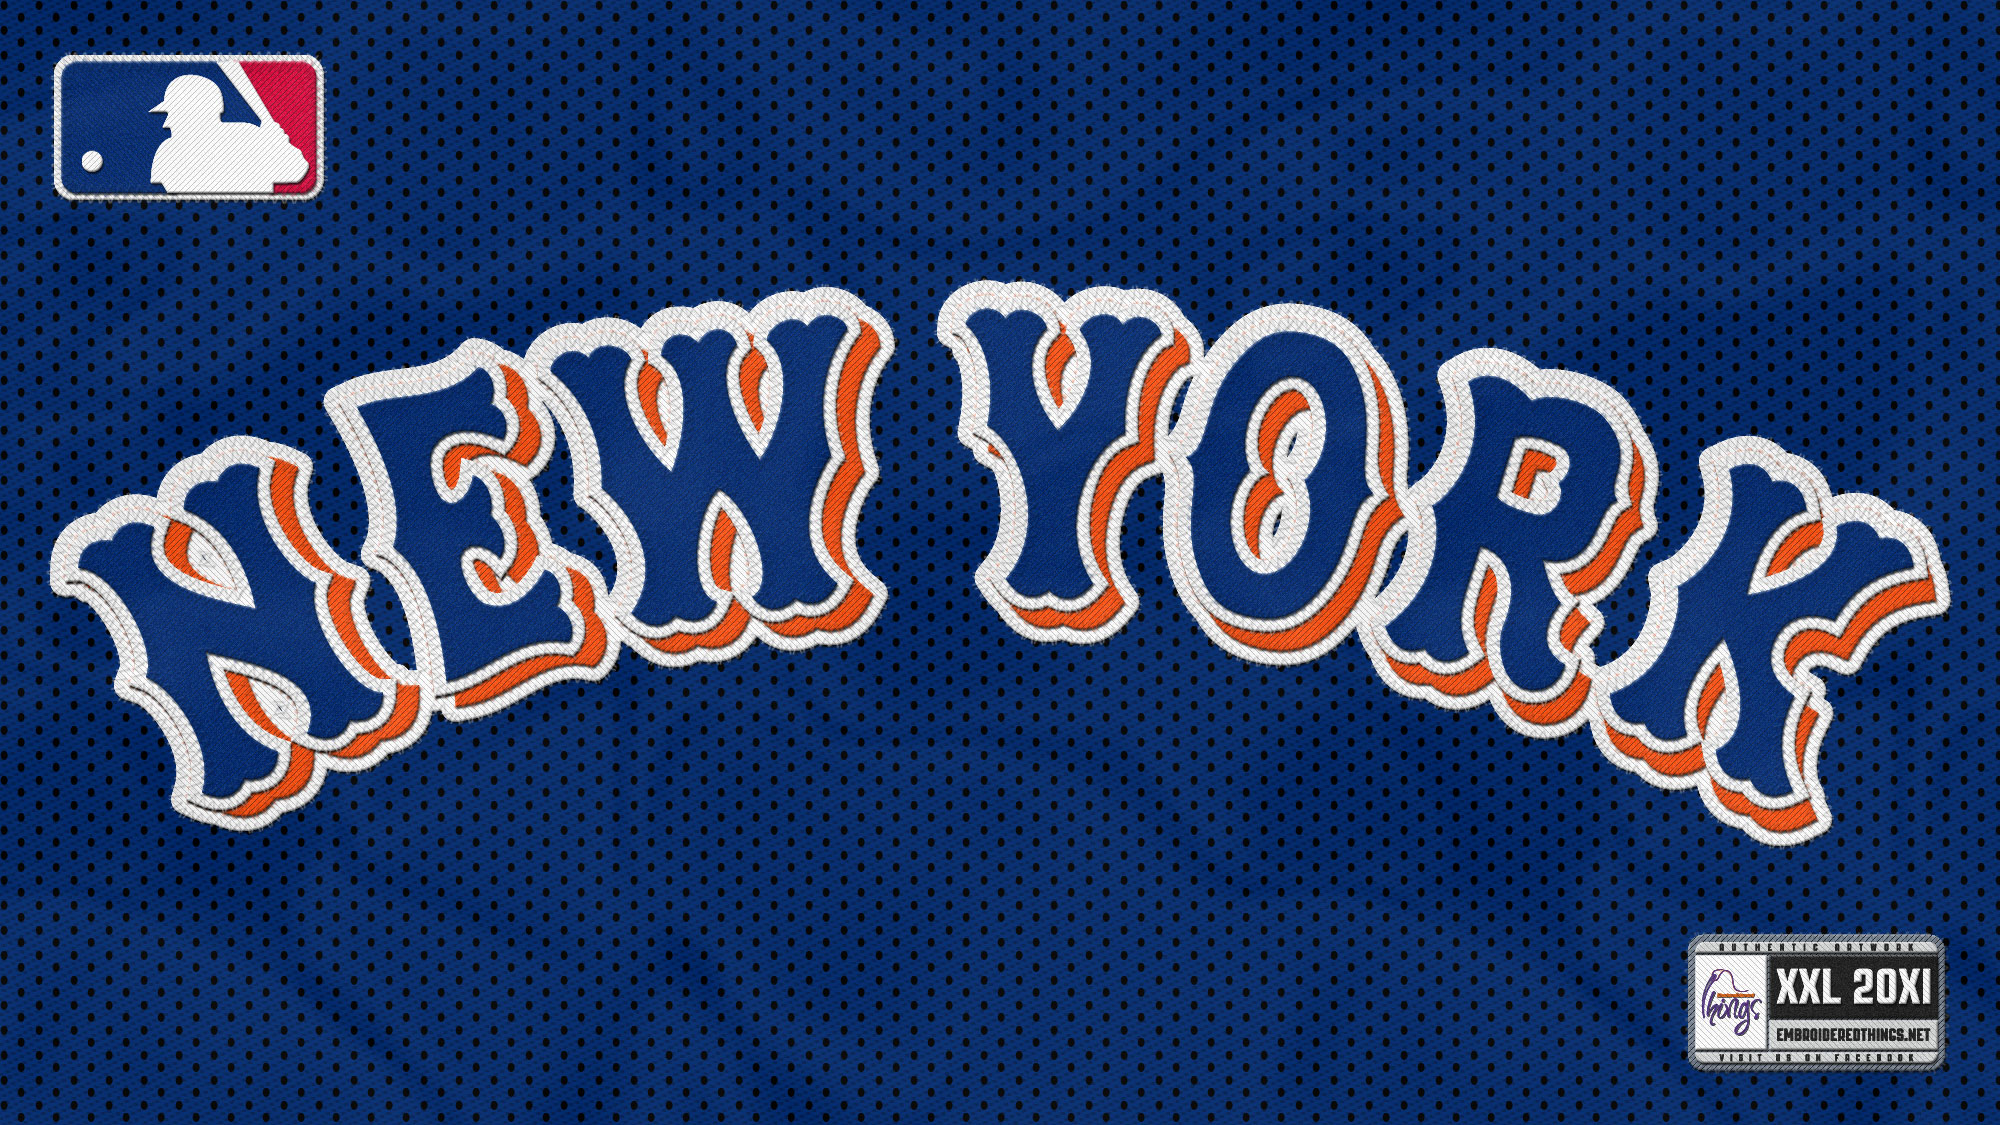 New York Mets Wallpaper New york mets